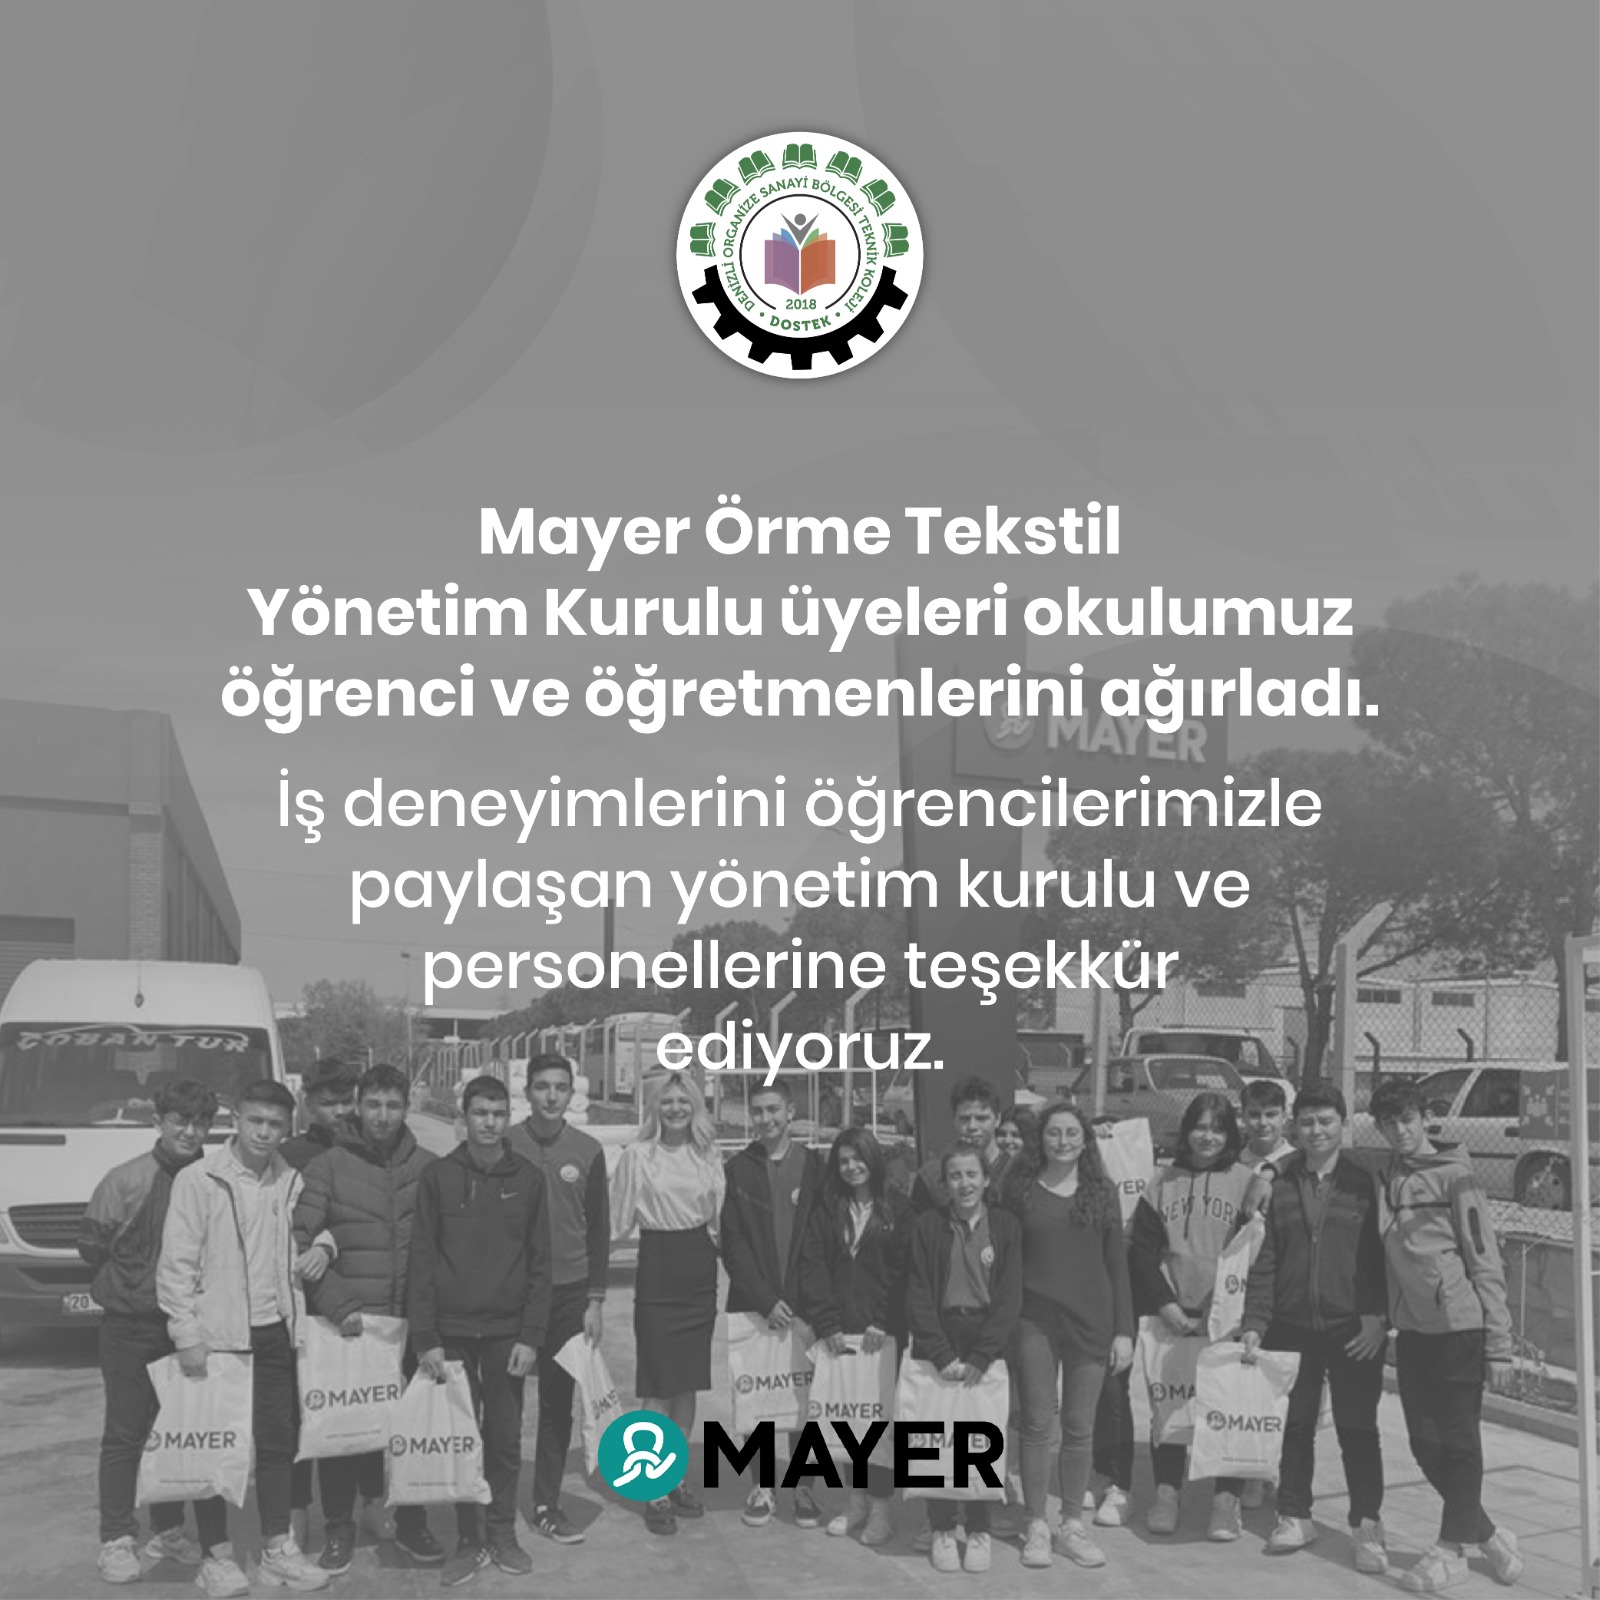 Mayer Örme Tekstil Dostek Koleji Öğretmen ve Öğrencilerini Ağırladı